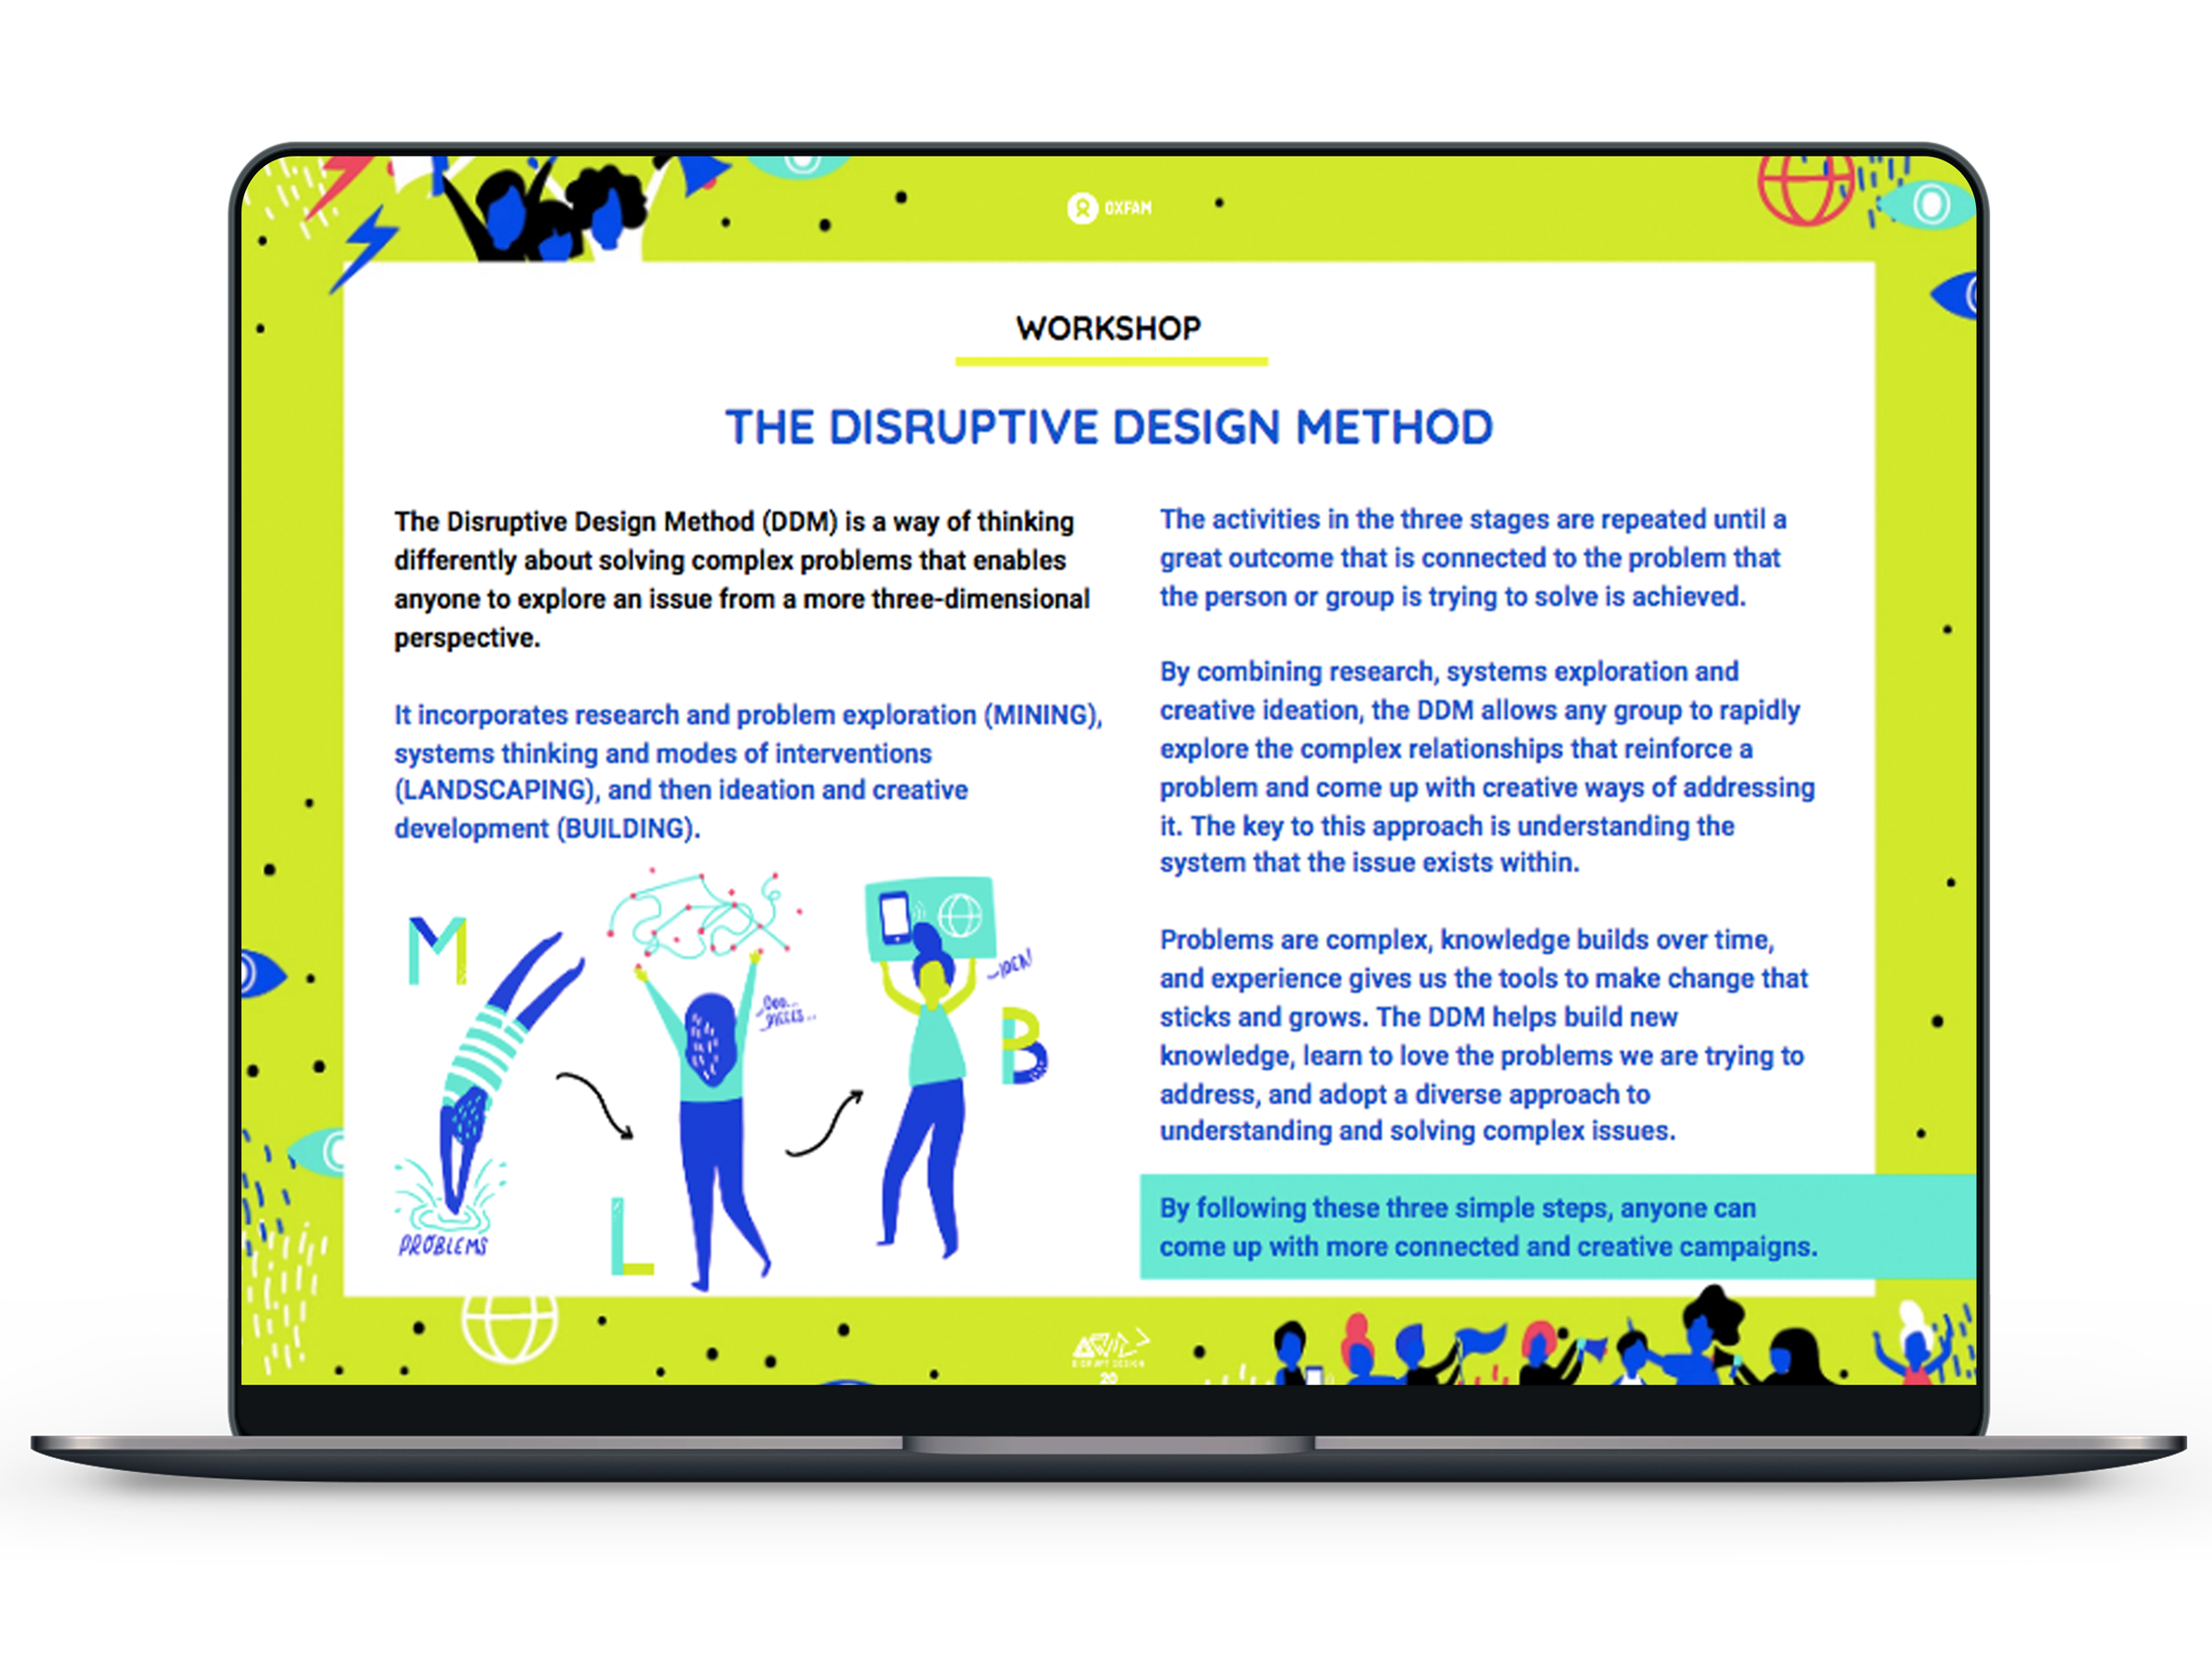 oxfam-disrupt-design-method.png